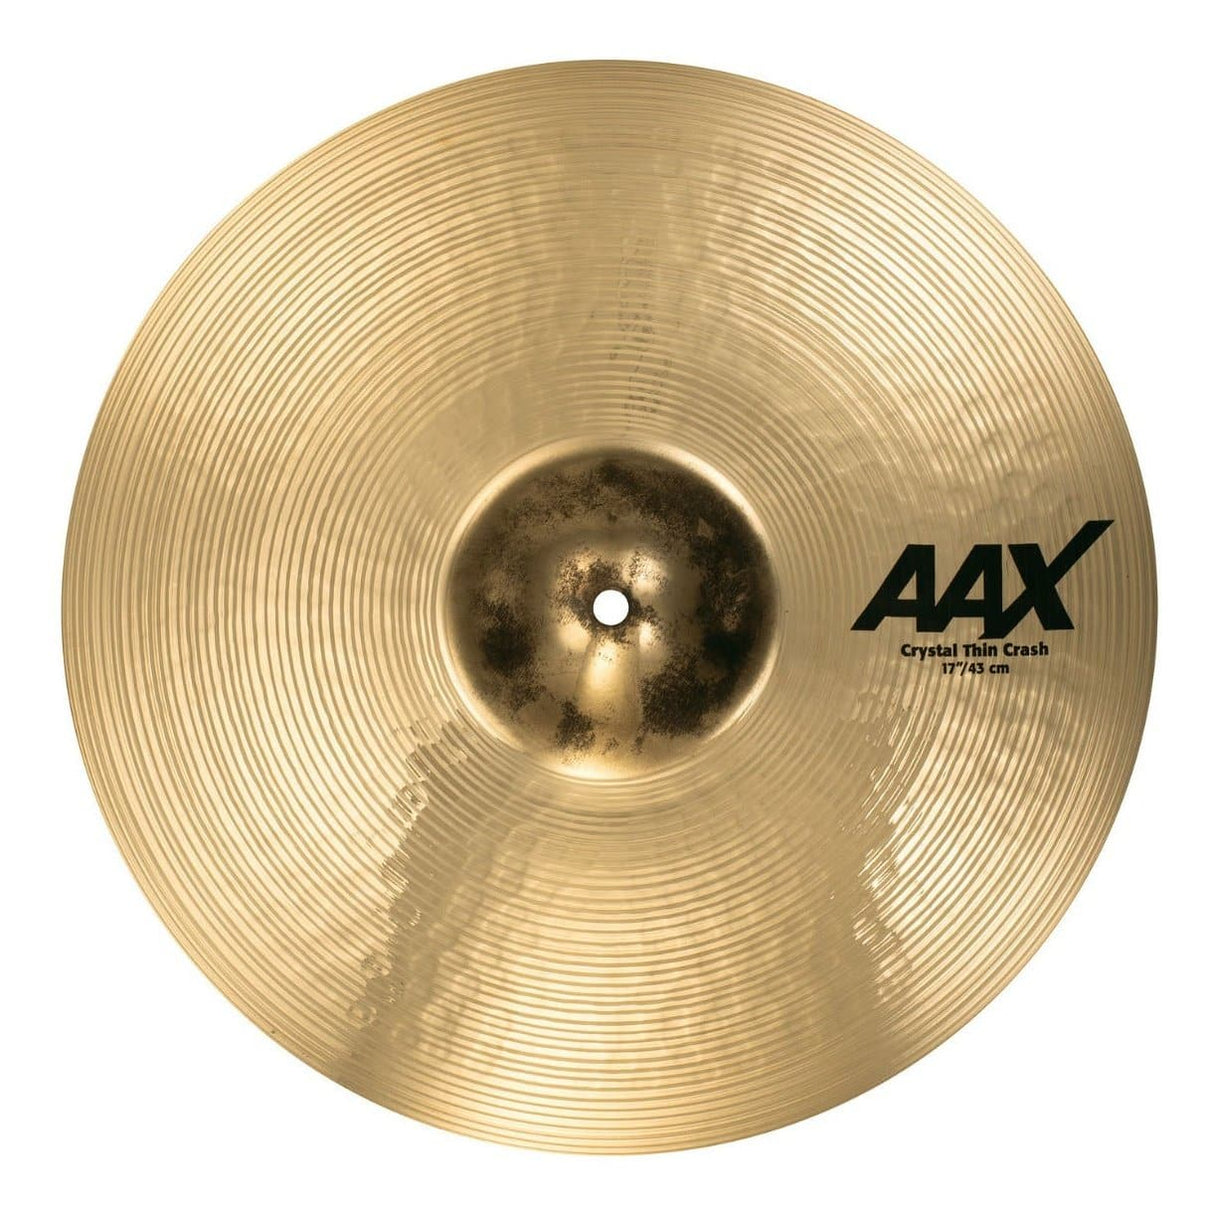 Sabian AAX Crystal Thin Crash Cymbal 17"